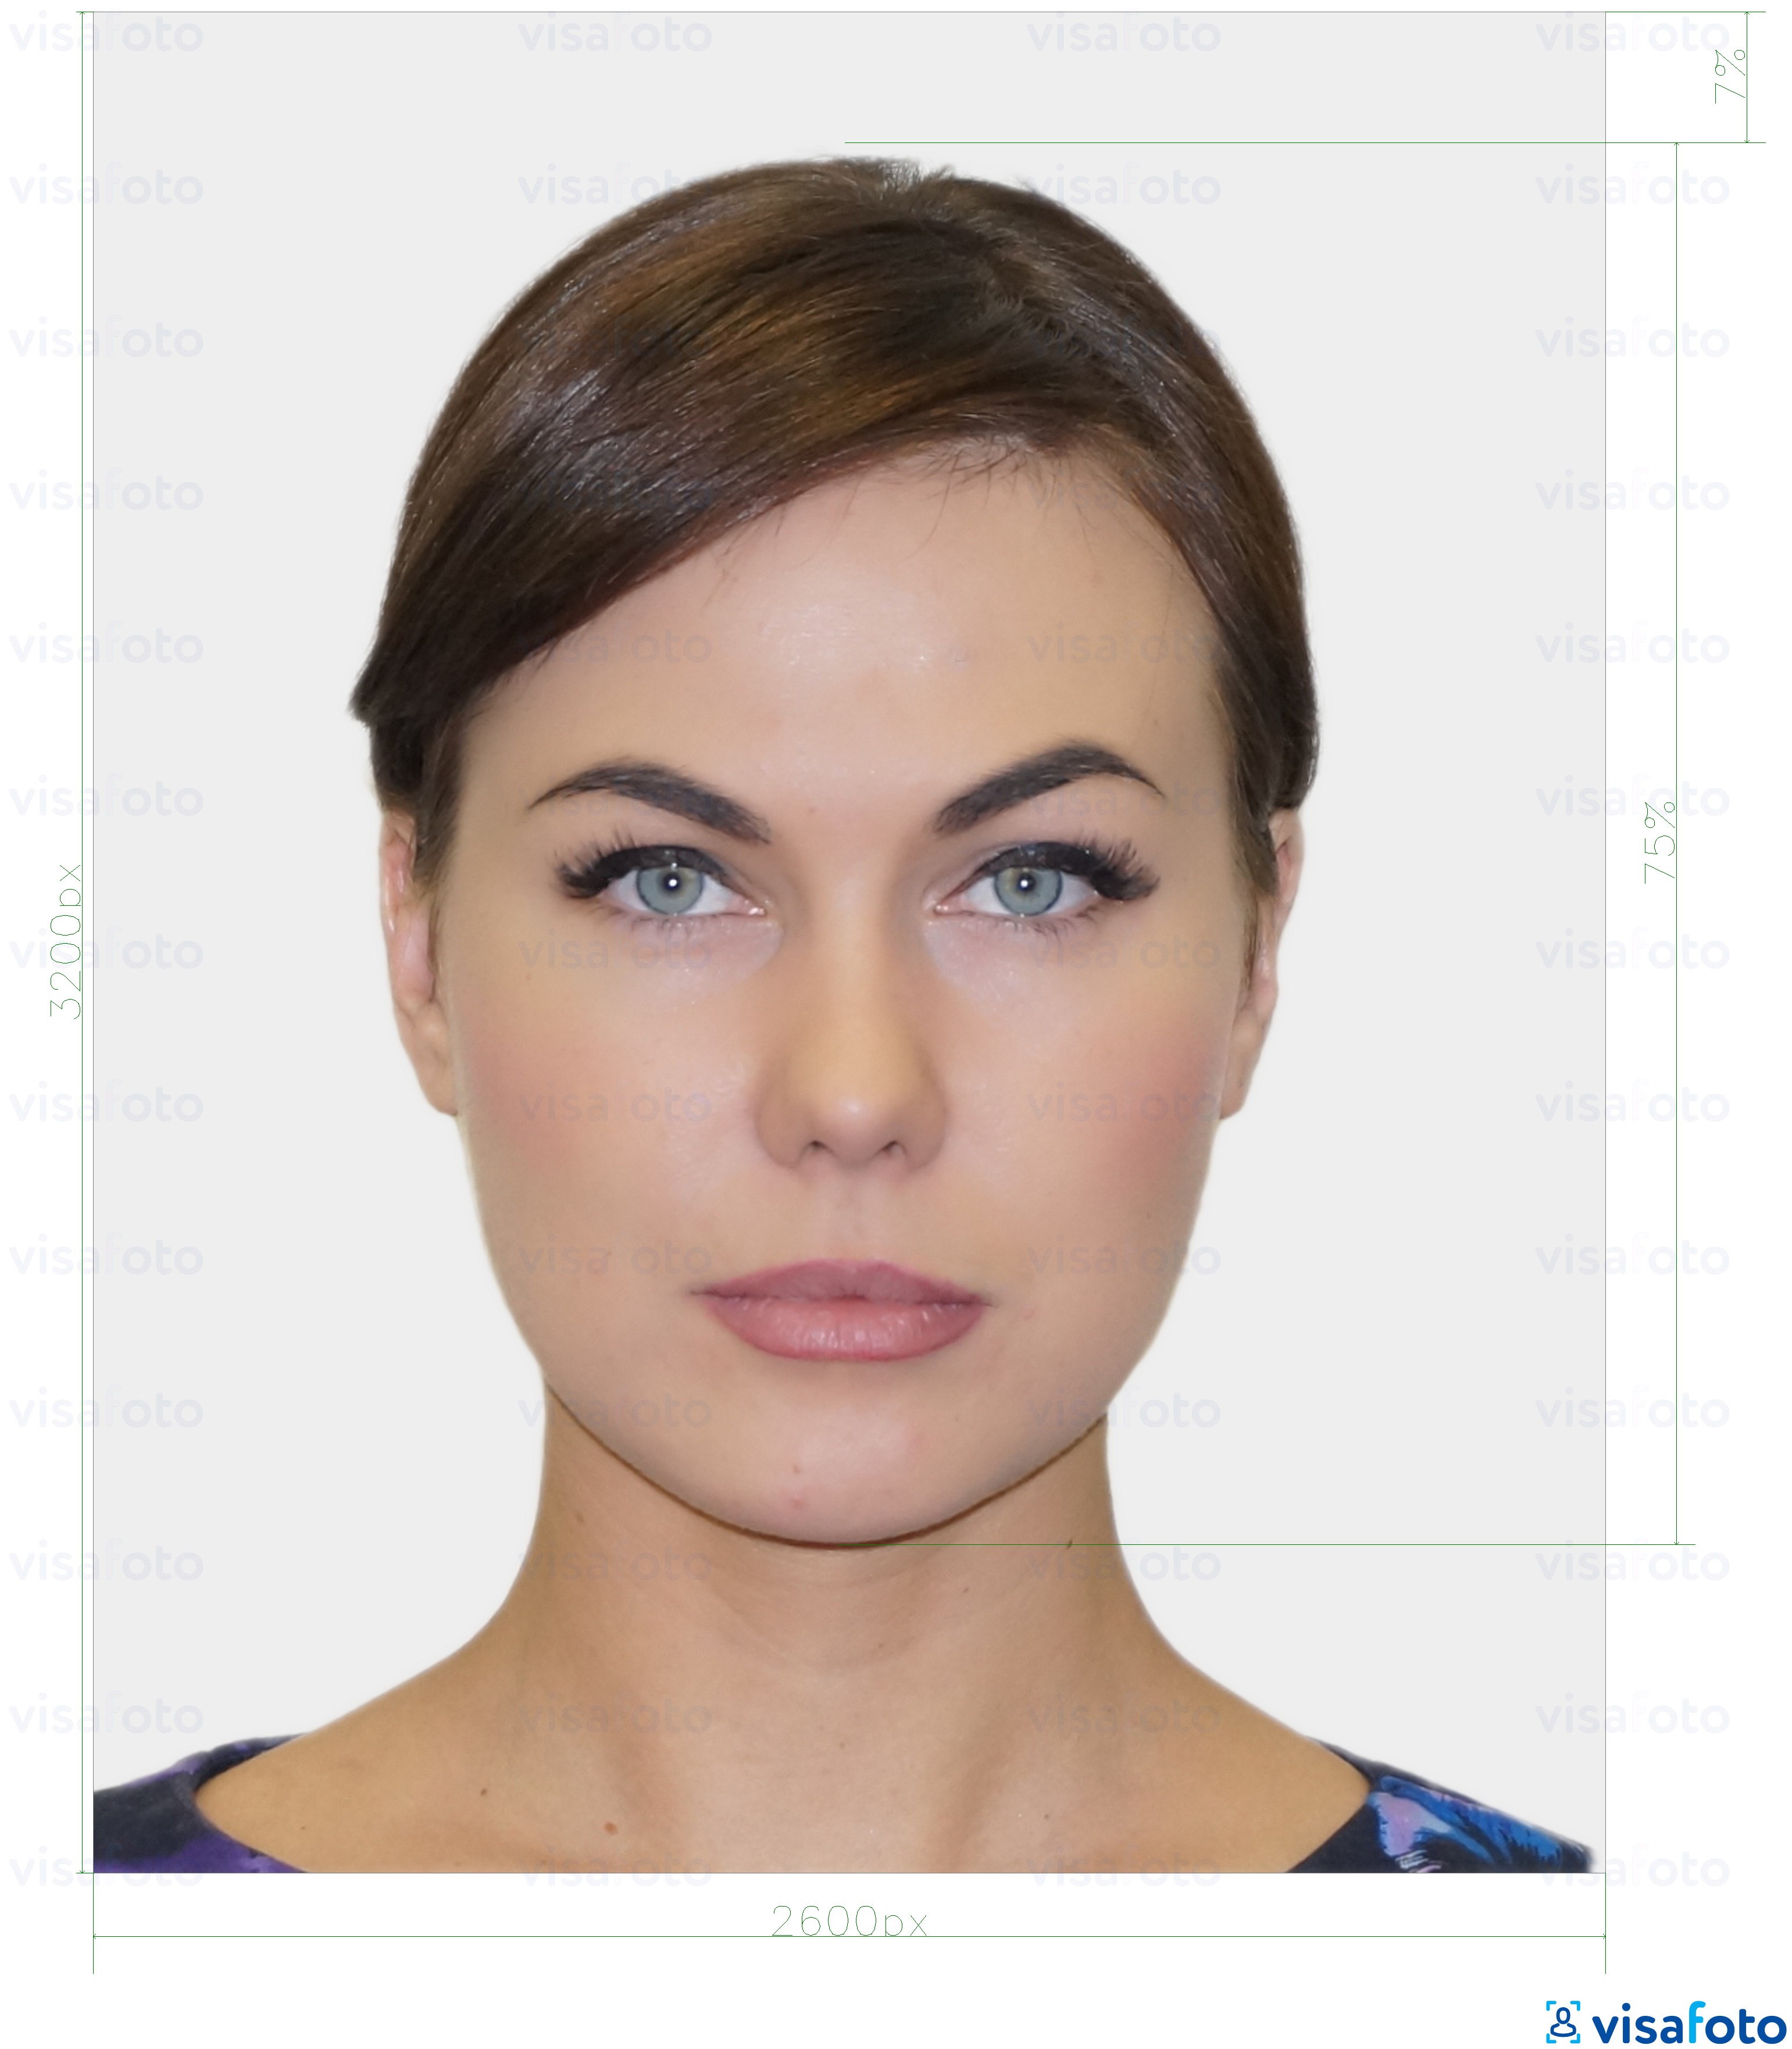 爱沙尼亚常驻数字身份证1300x1600像素 的标准尺寸照片示例